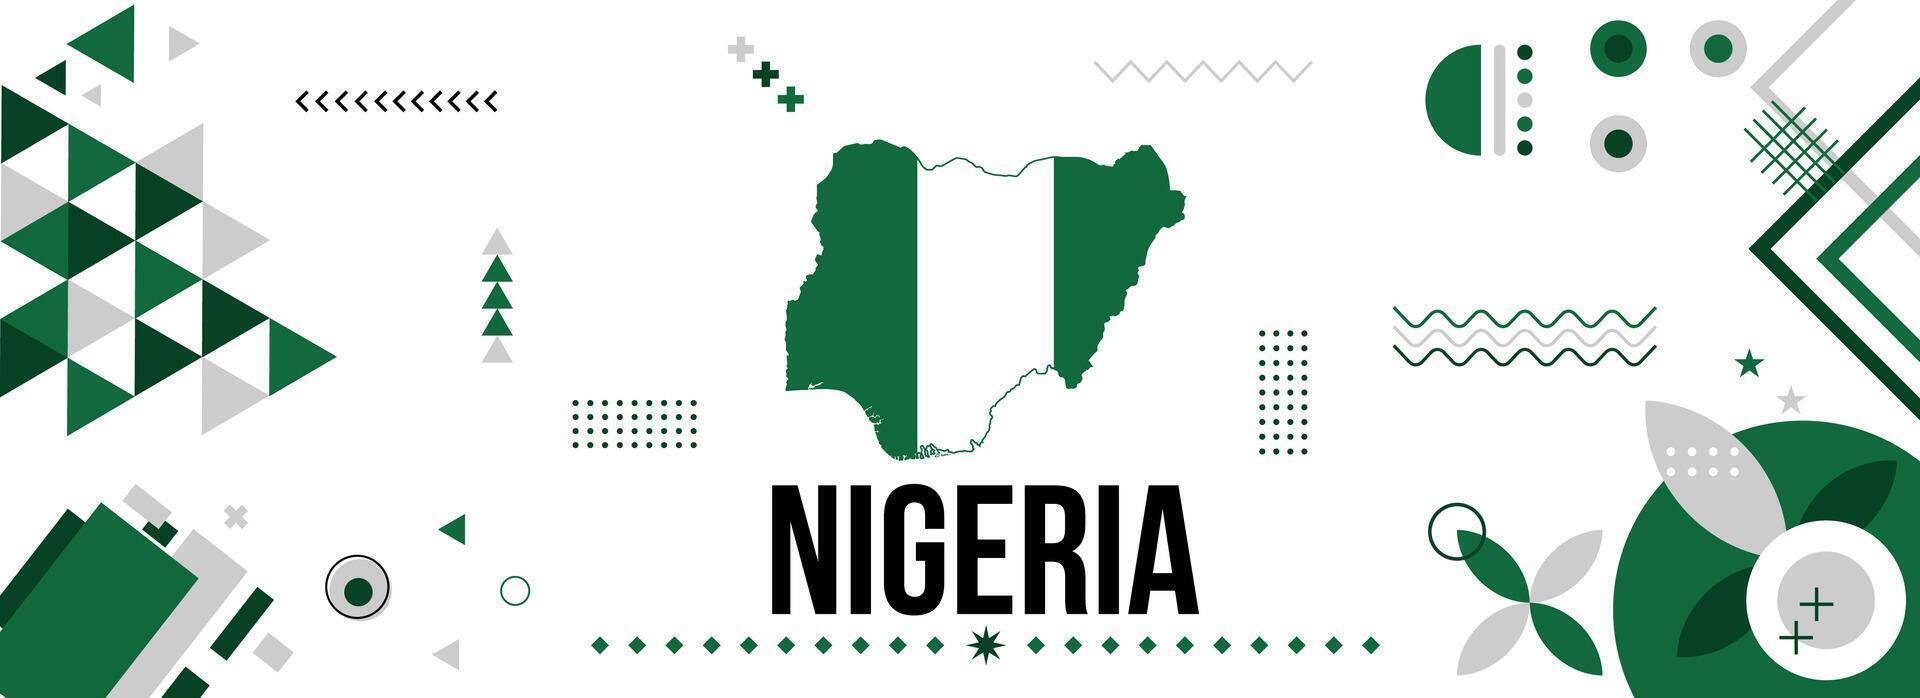 Nigeria nazionale o indipendenza giorno bandiera per nazione celebrazione. bandiera e carta geografica di Nigeria con moderno retrò design con typorgaphy astratto geometrico icone. vettore illustrazione.